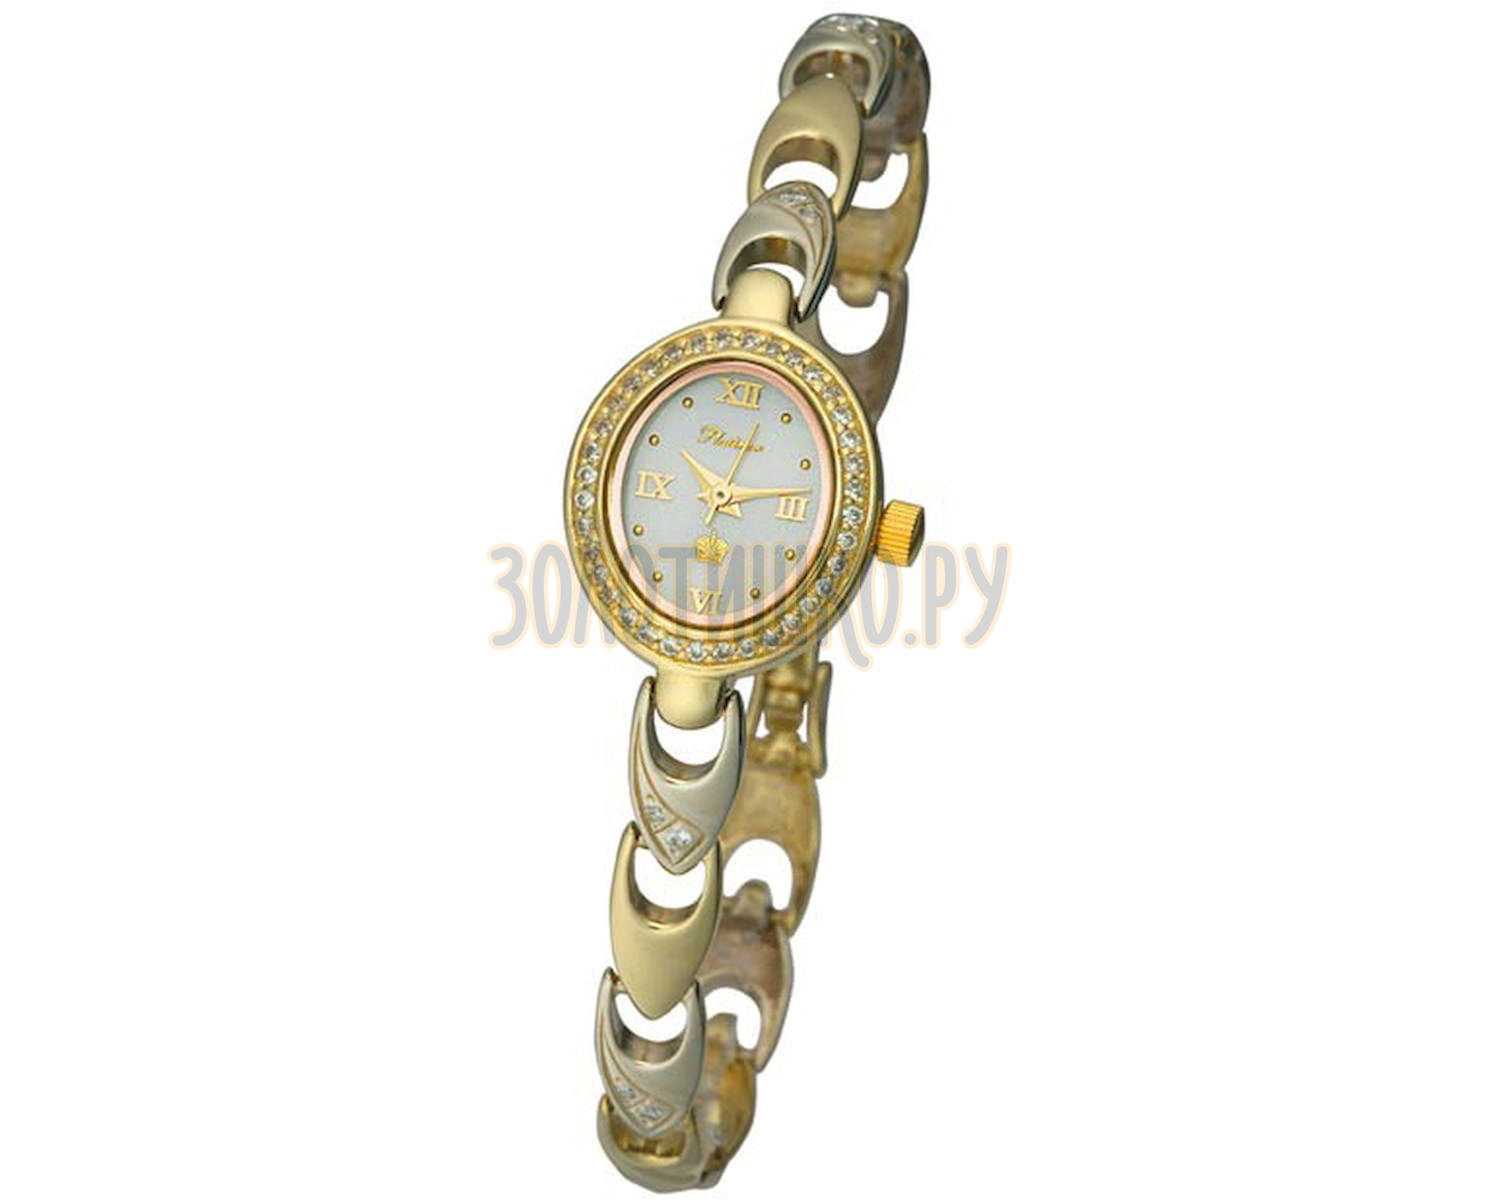 Каталог золотых часов с ценами женские. Наручные часы Platinor 78250.316. Часы Чайка Platinor с бриллиантами. Золотые женские часы Platinor часы.